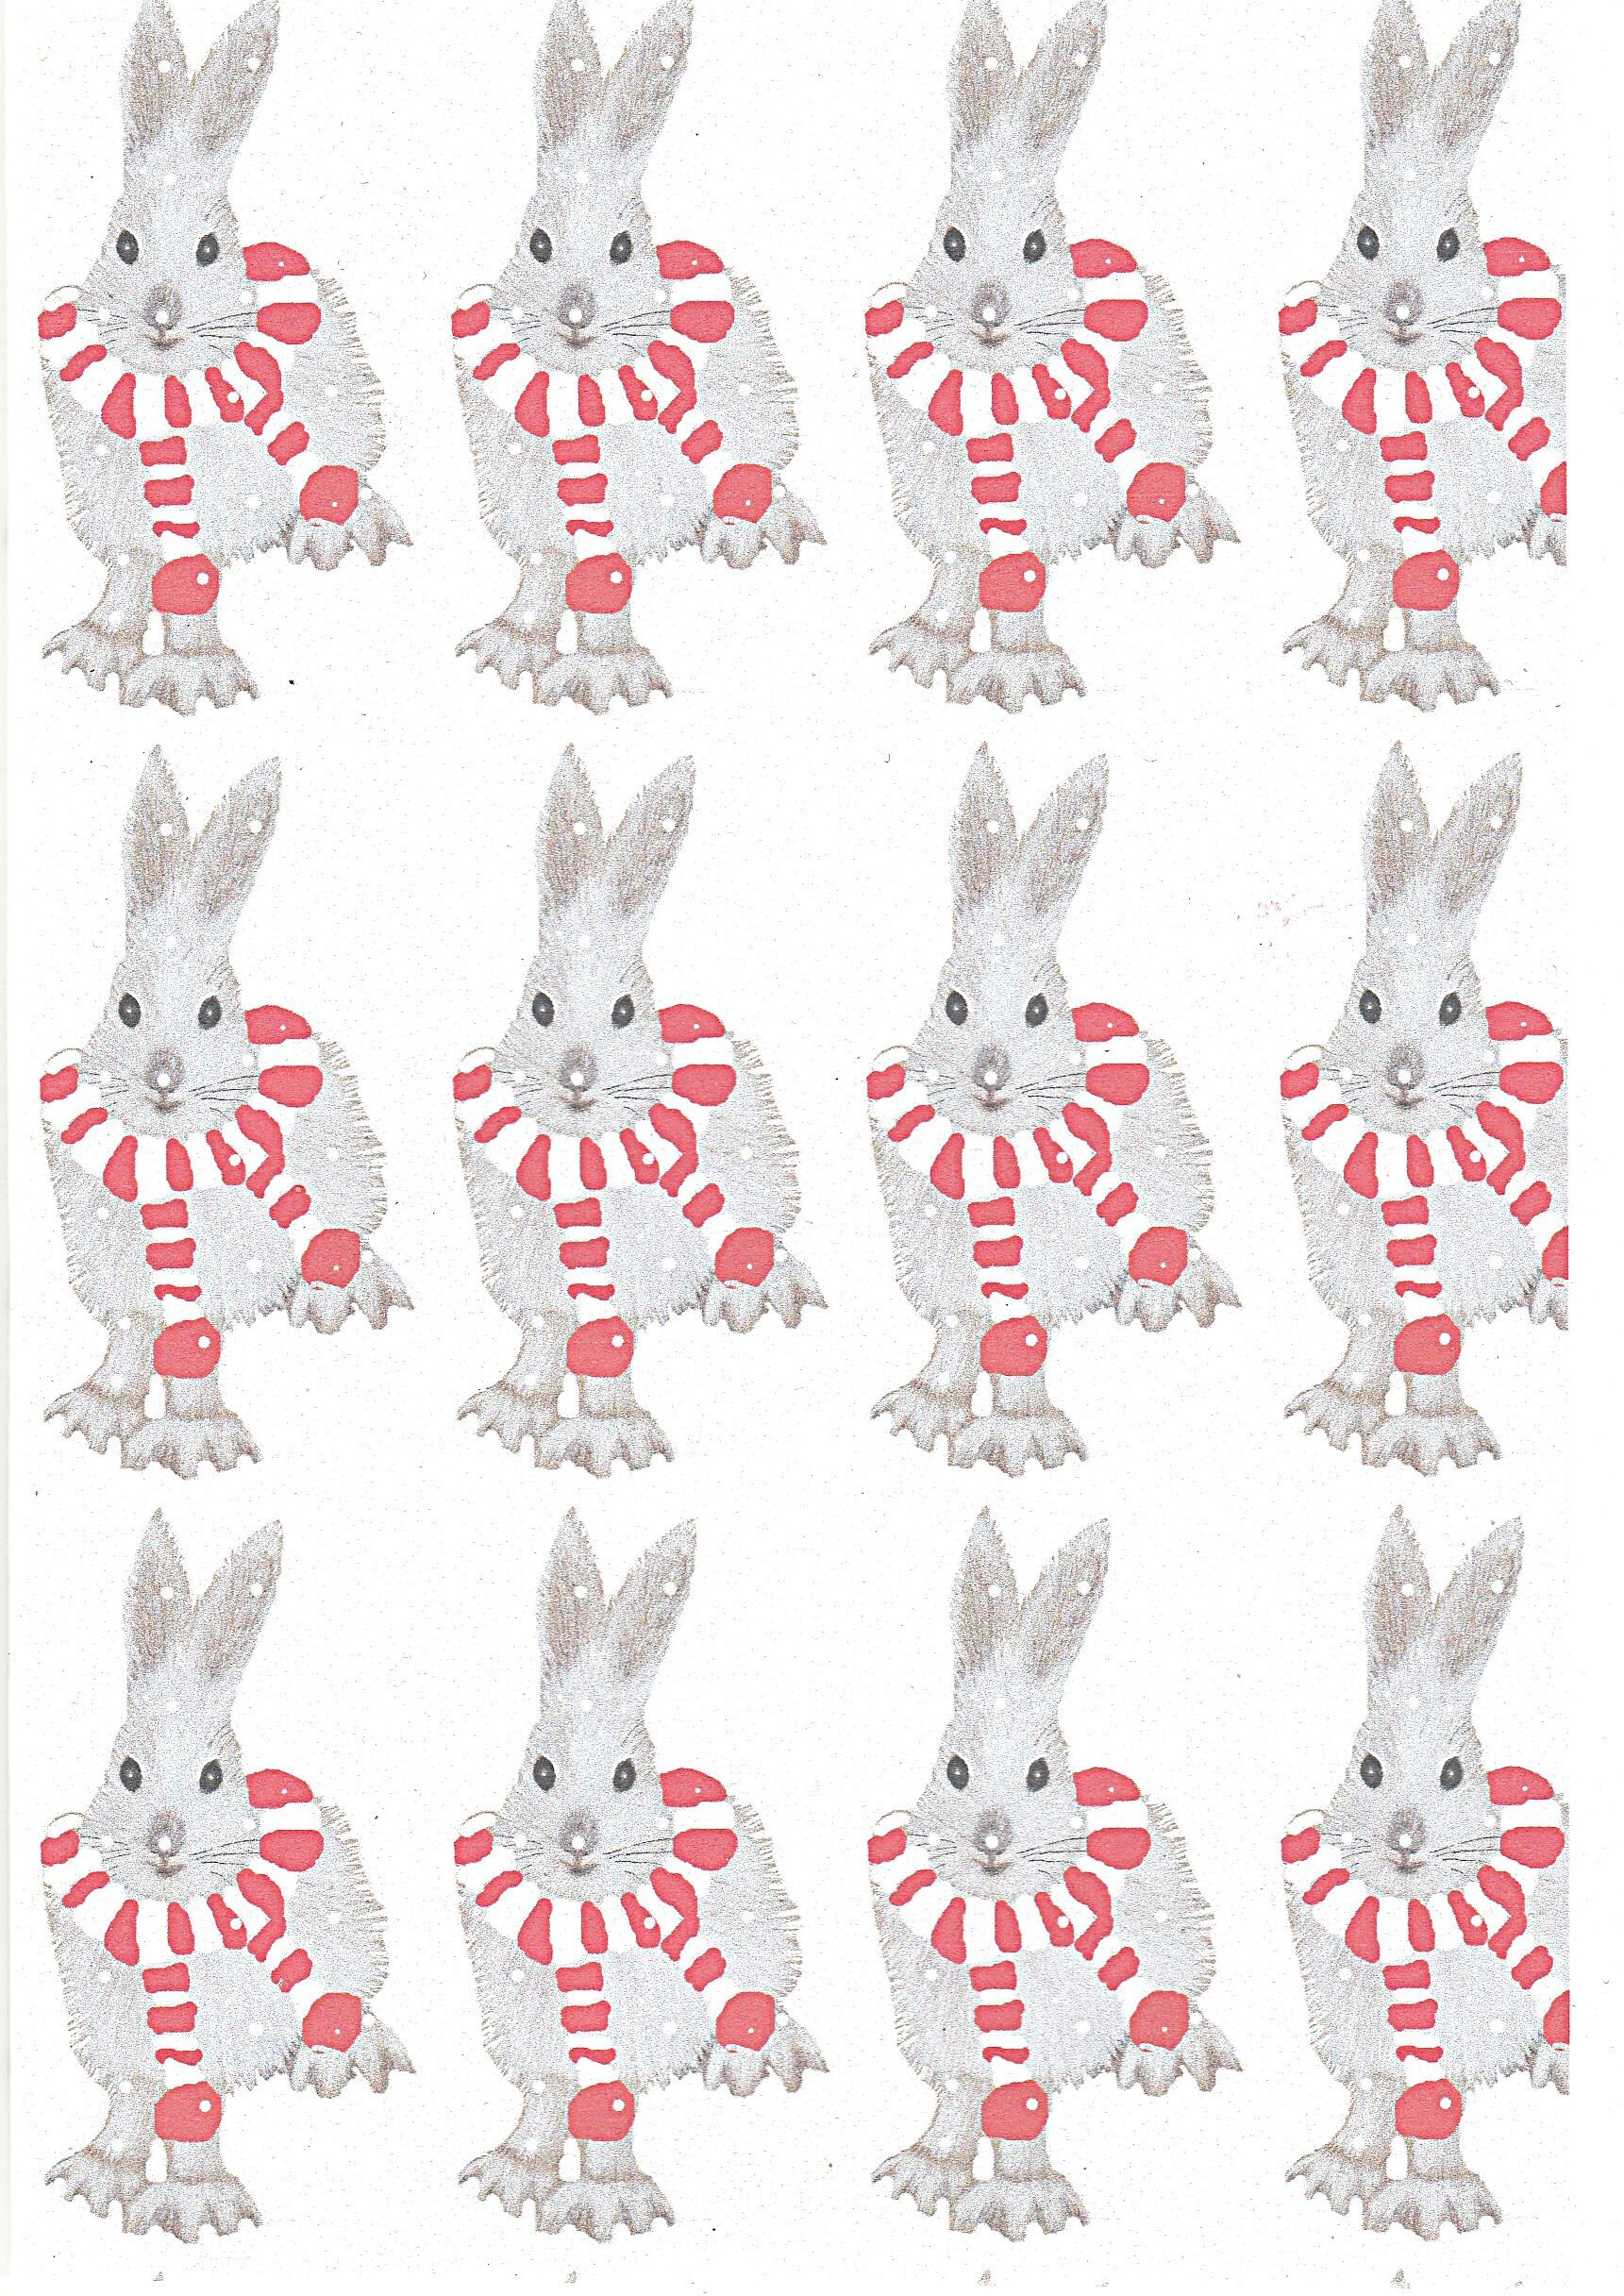 Papier d’emballage De la Saint-Valentin de lapin. Papier lapin. Emballage  cadeau lapin. Papier lapin. Lapin et cœur. Papier d’emballage romantique.